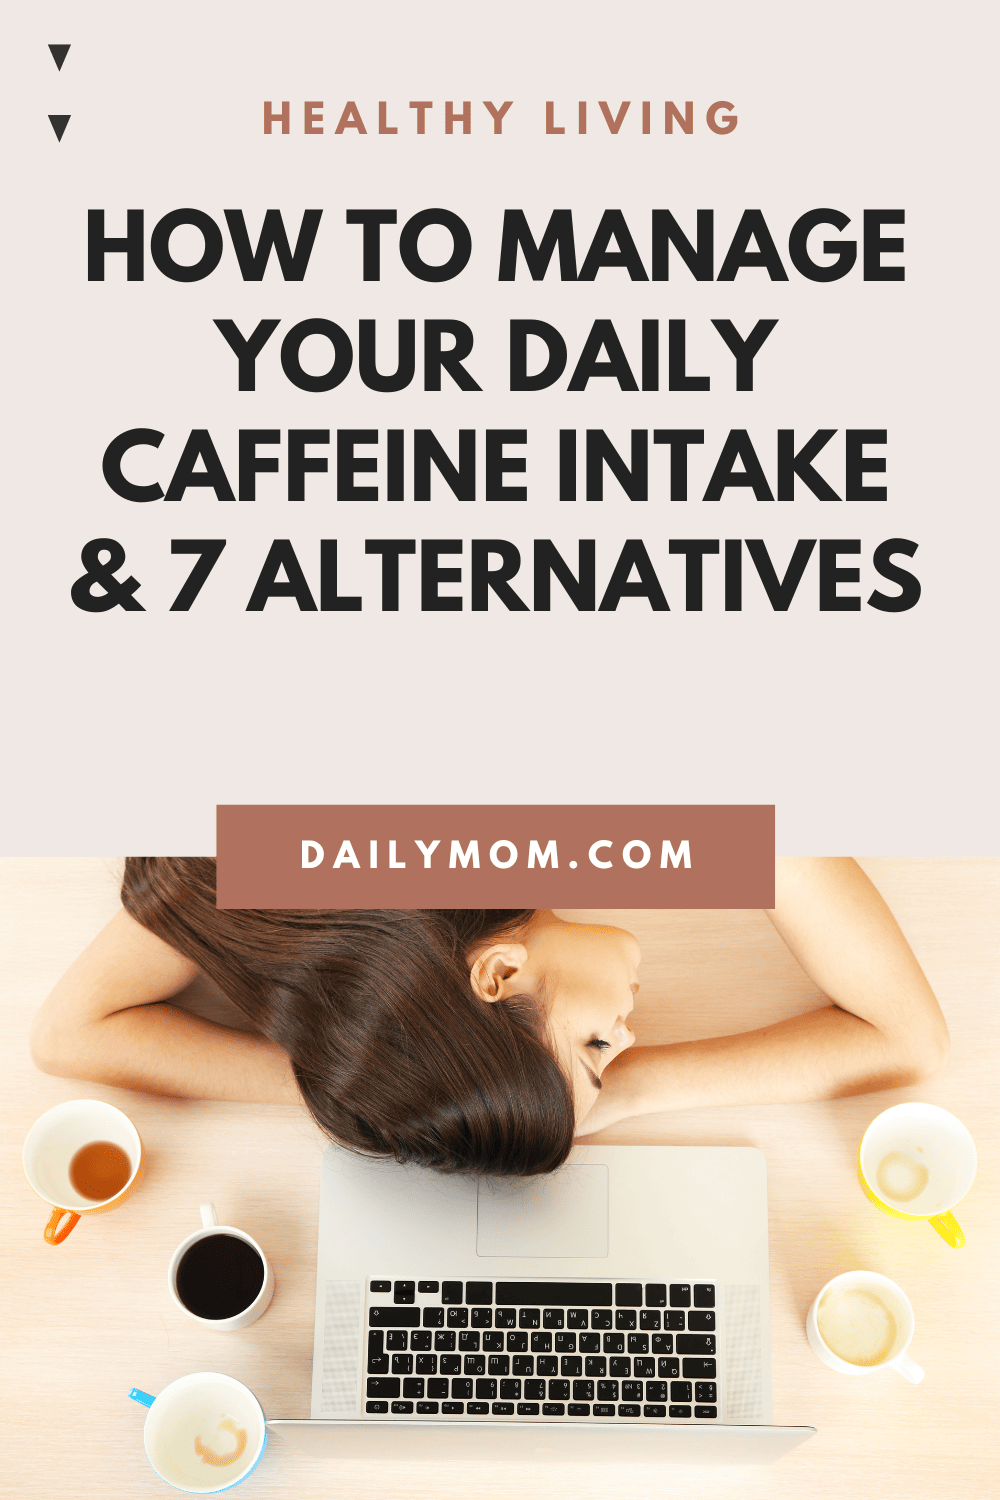 Daily Mom Parent Portal Caffeine Intake